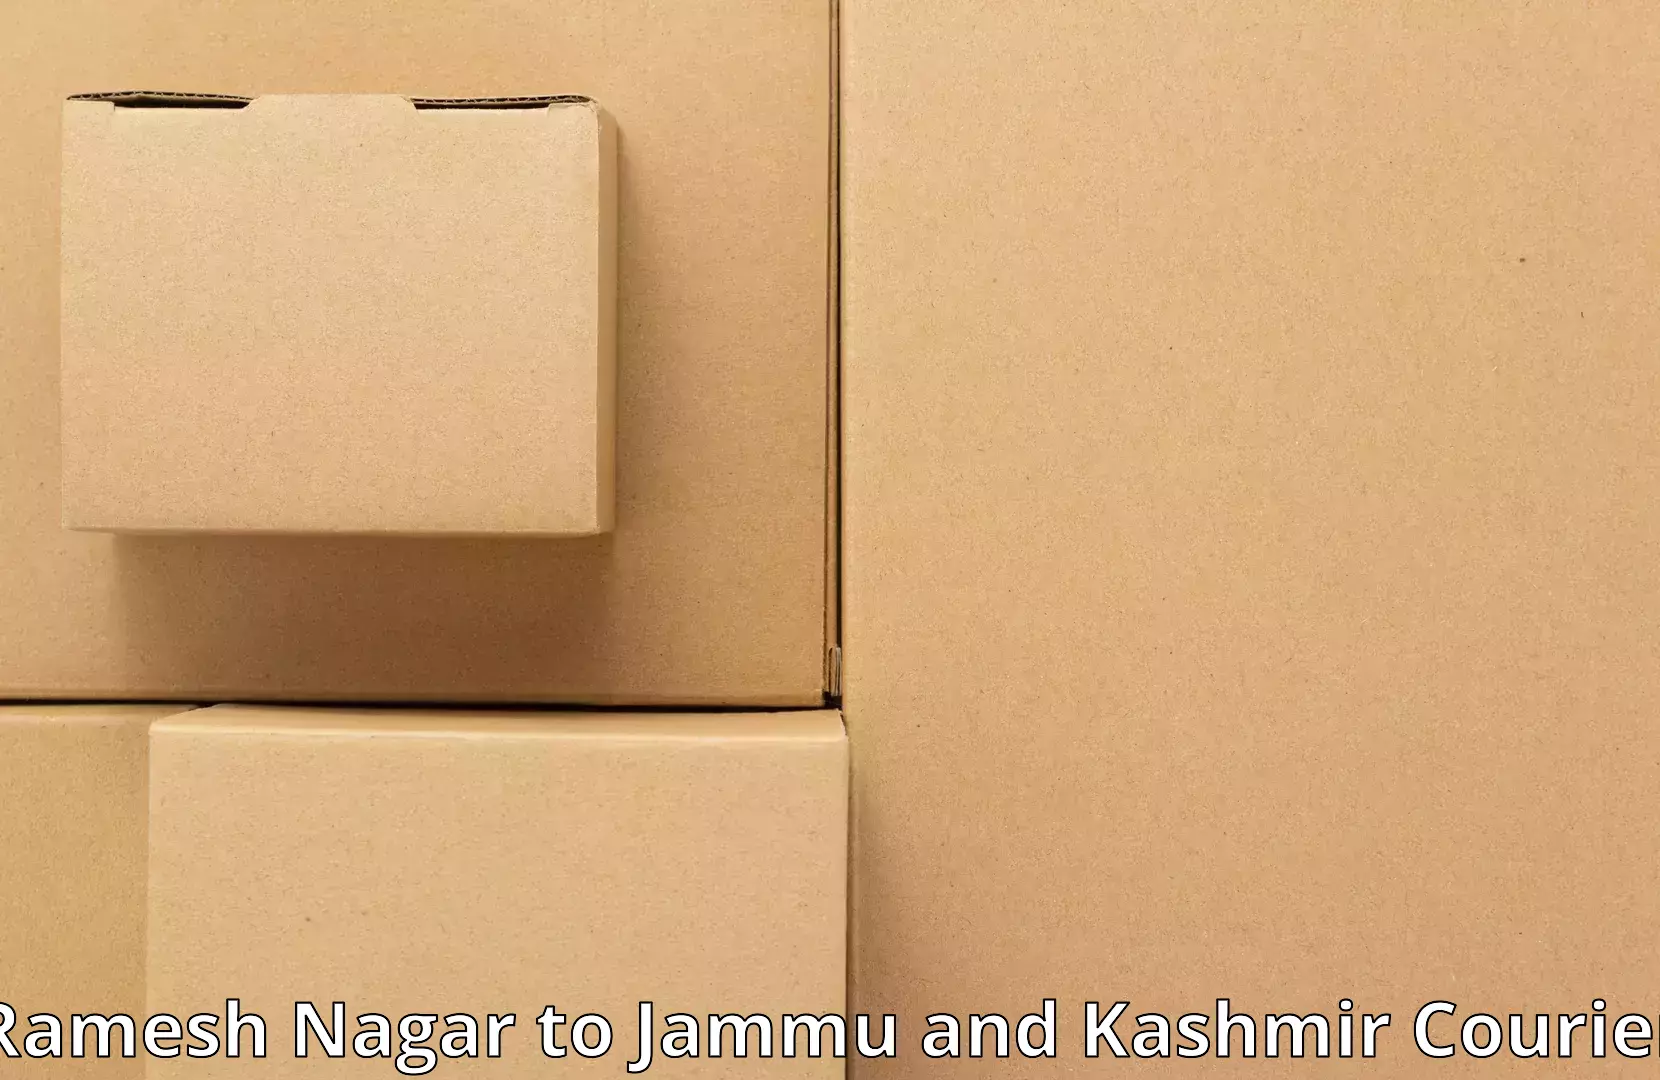 Furniture moving plans Ramesh Nagar to Ramnagar Udhampur